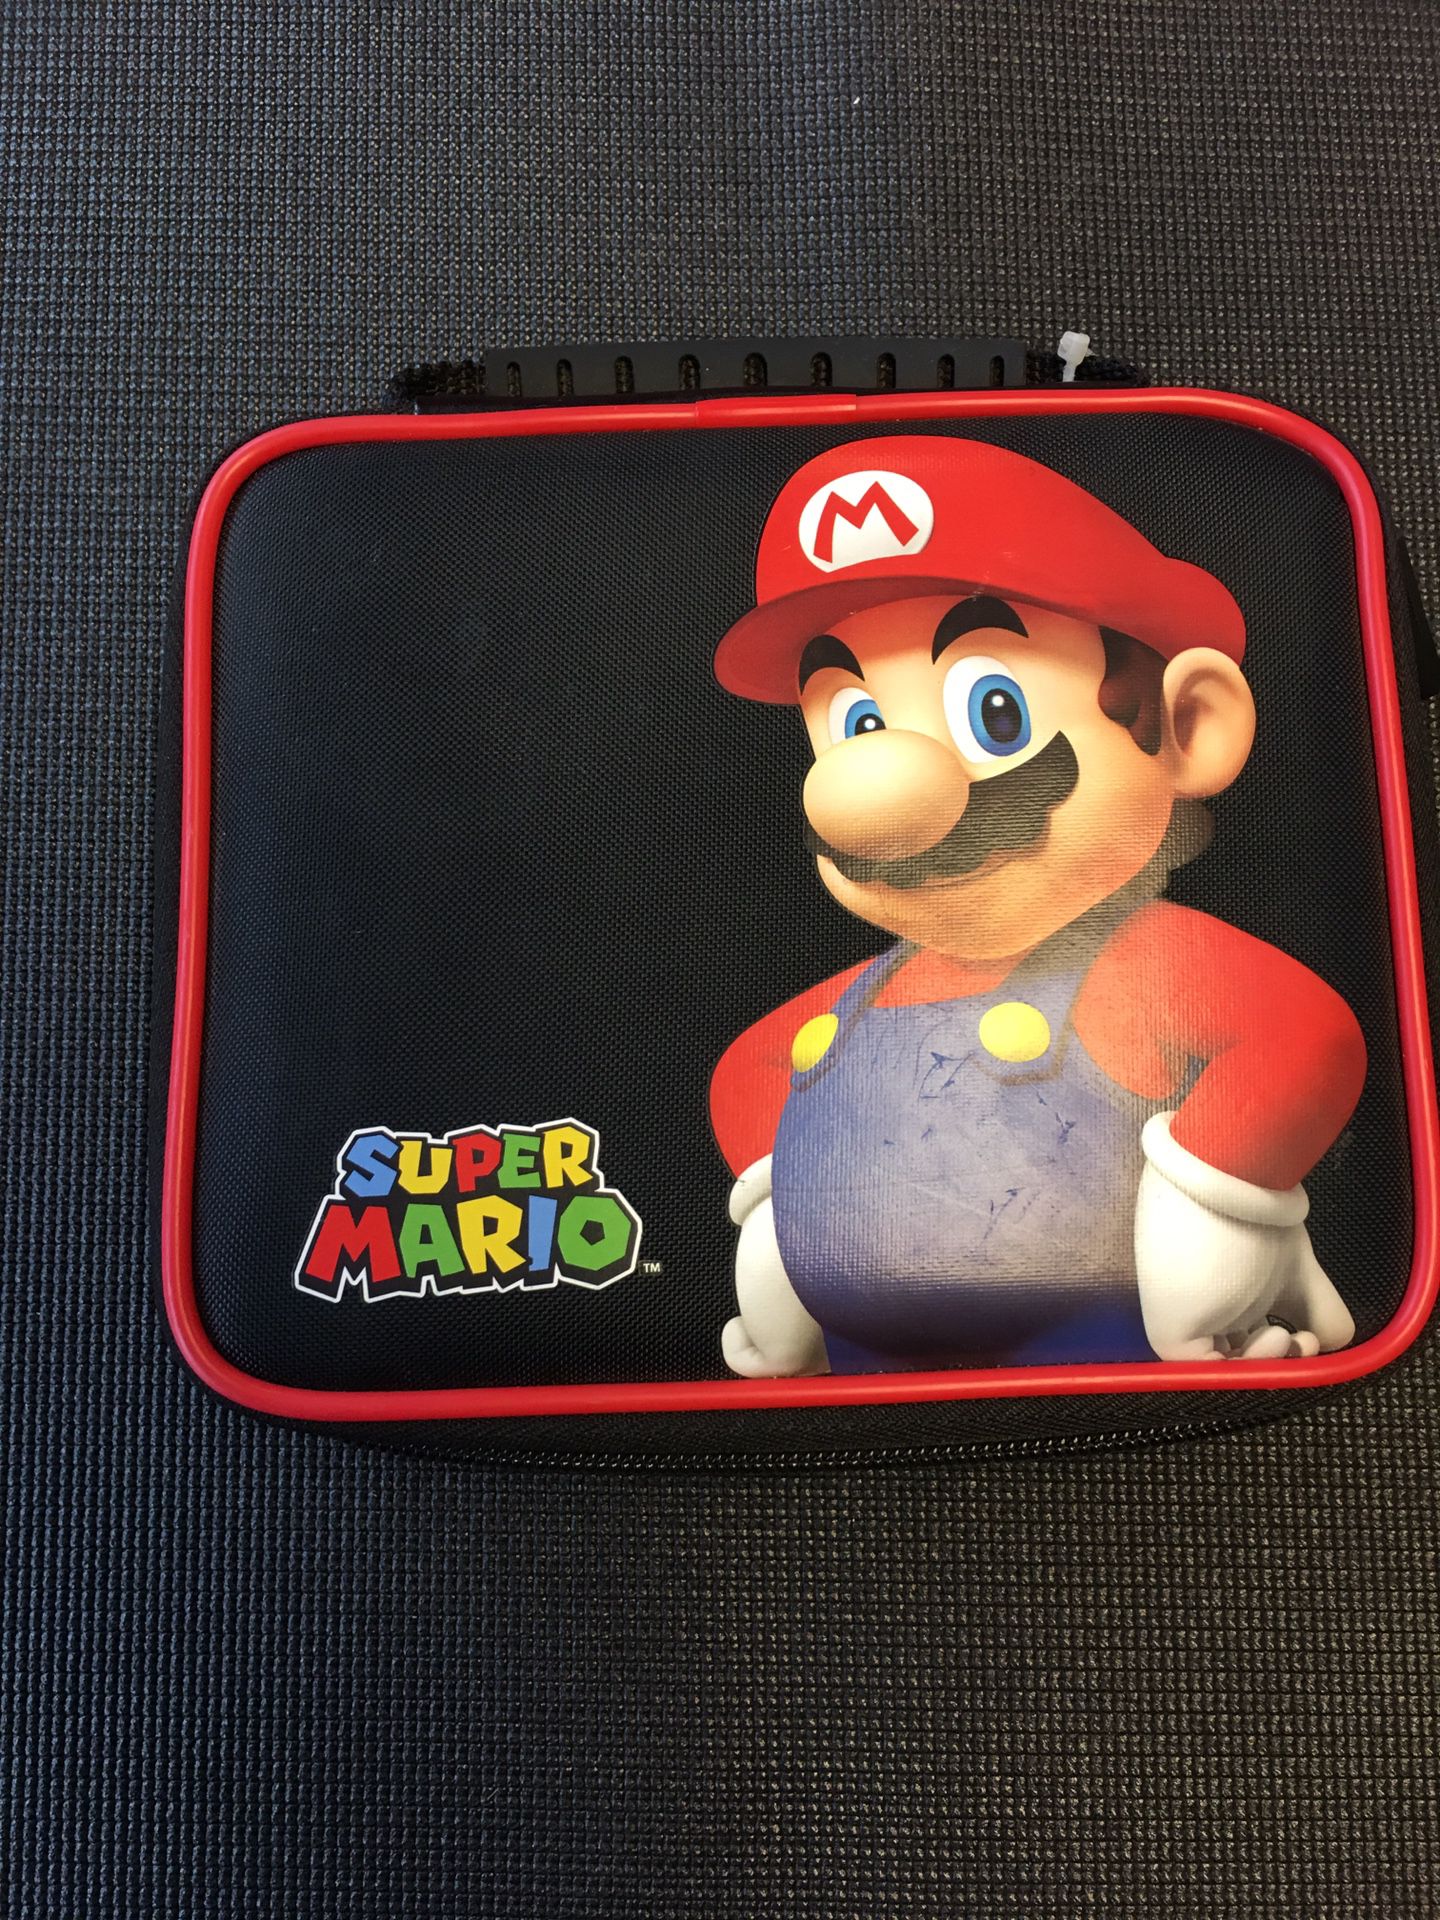 NINTENDO 3ds XL Super Mario Edition